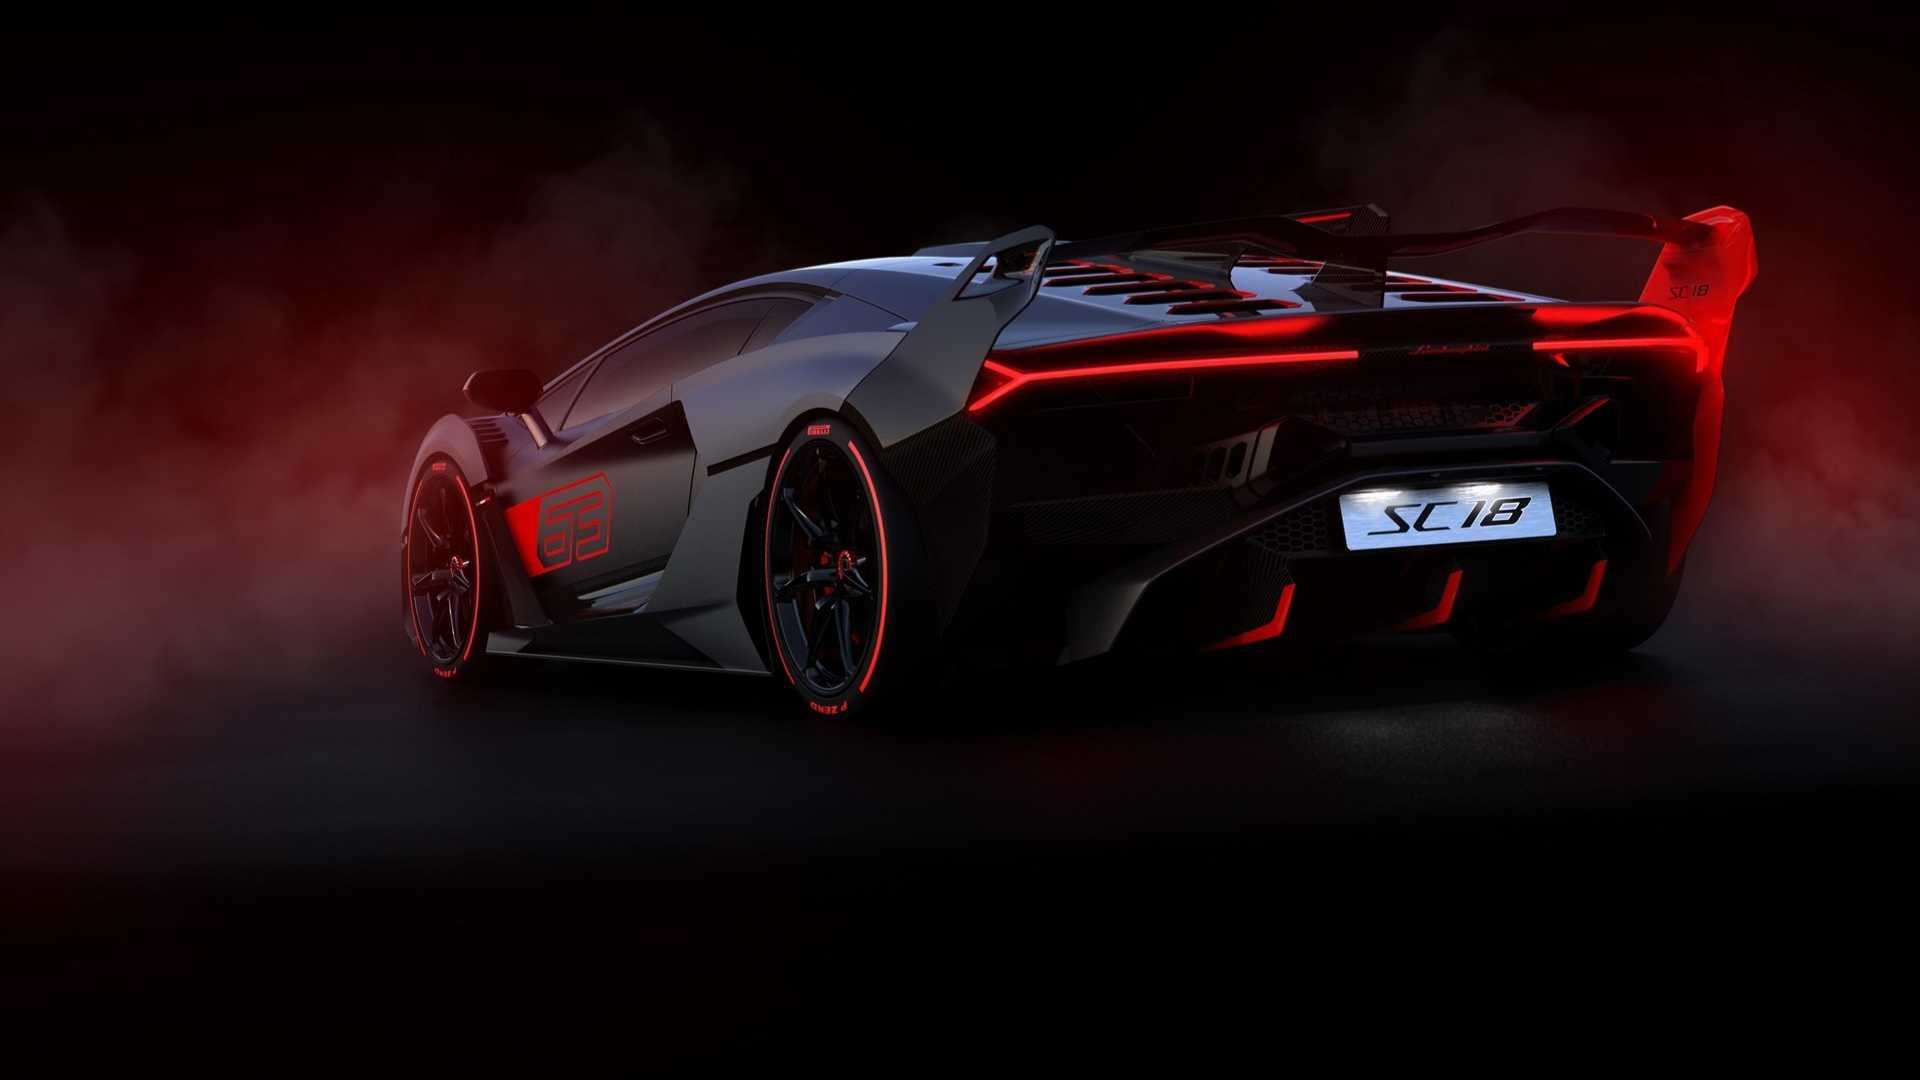 Lamborghini SC18 Alston: Siêu xe Lamborghini SC18 Alston là sự kết hợp hoàn hảo giữa công nghệ và nghệ thuật. Với thiết kế độc đáo, tinh tế và đầy mạnh mẽ, chiếc xe này sẽ khiến bạn say đắm ngay từ cái nhìn đầu tiên. Cùng chiêm ngưỡng hình ảnh của nó để cảm nhận sự đẳng cấp và sang trọng.